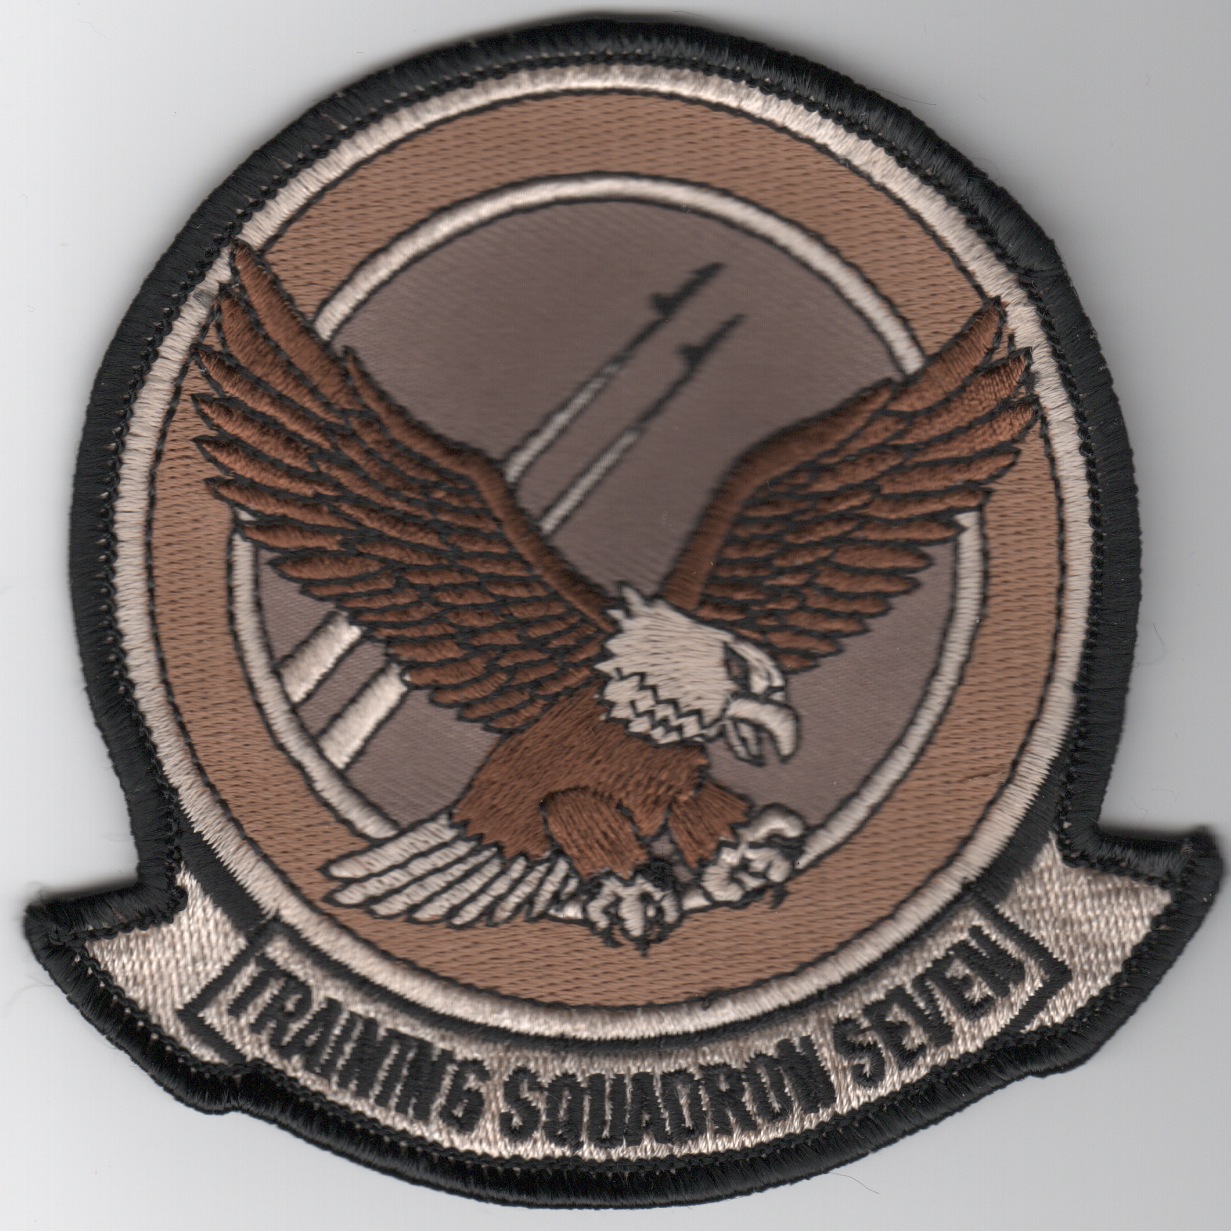 Training Squadron Seven Squadron Patch (Des)